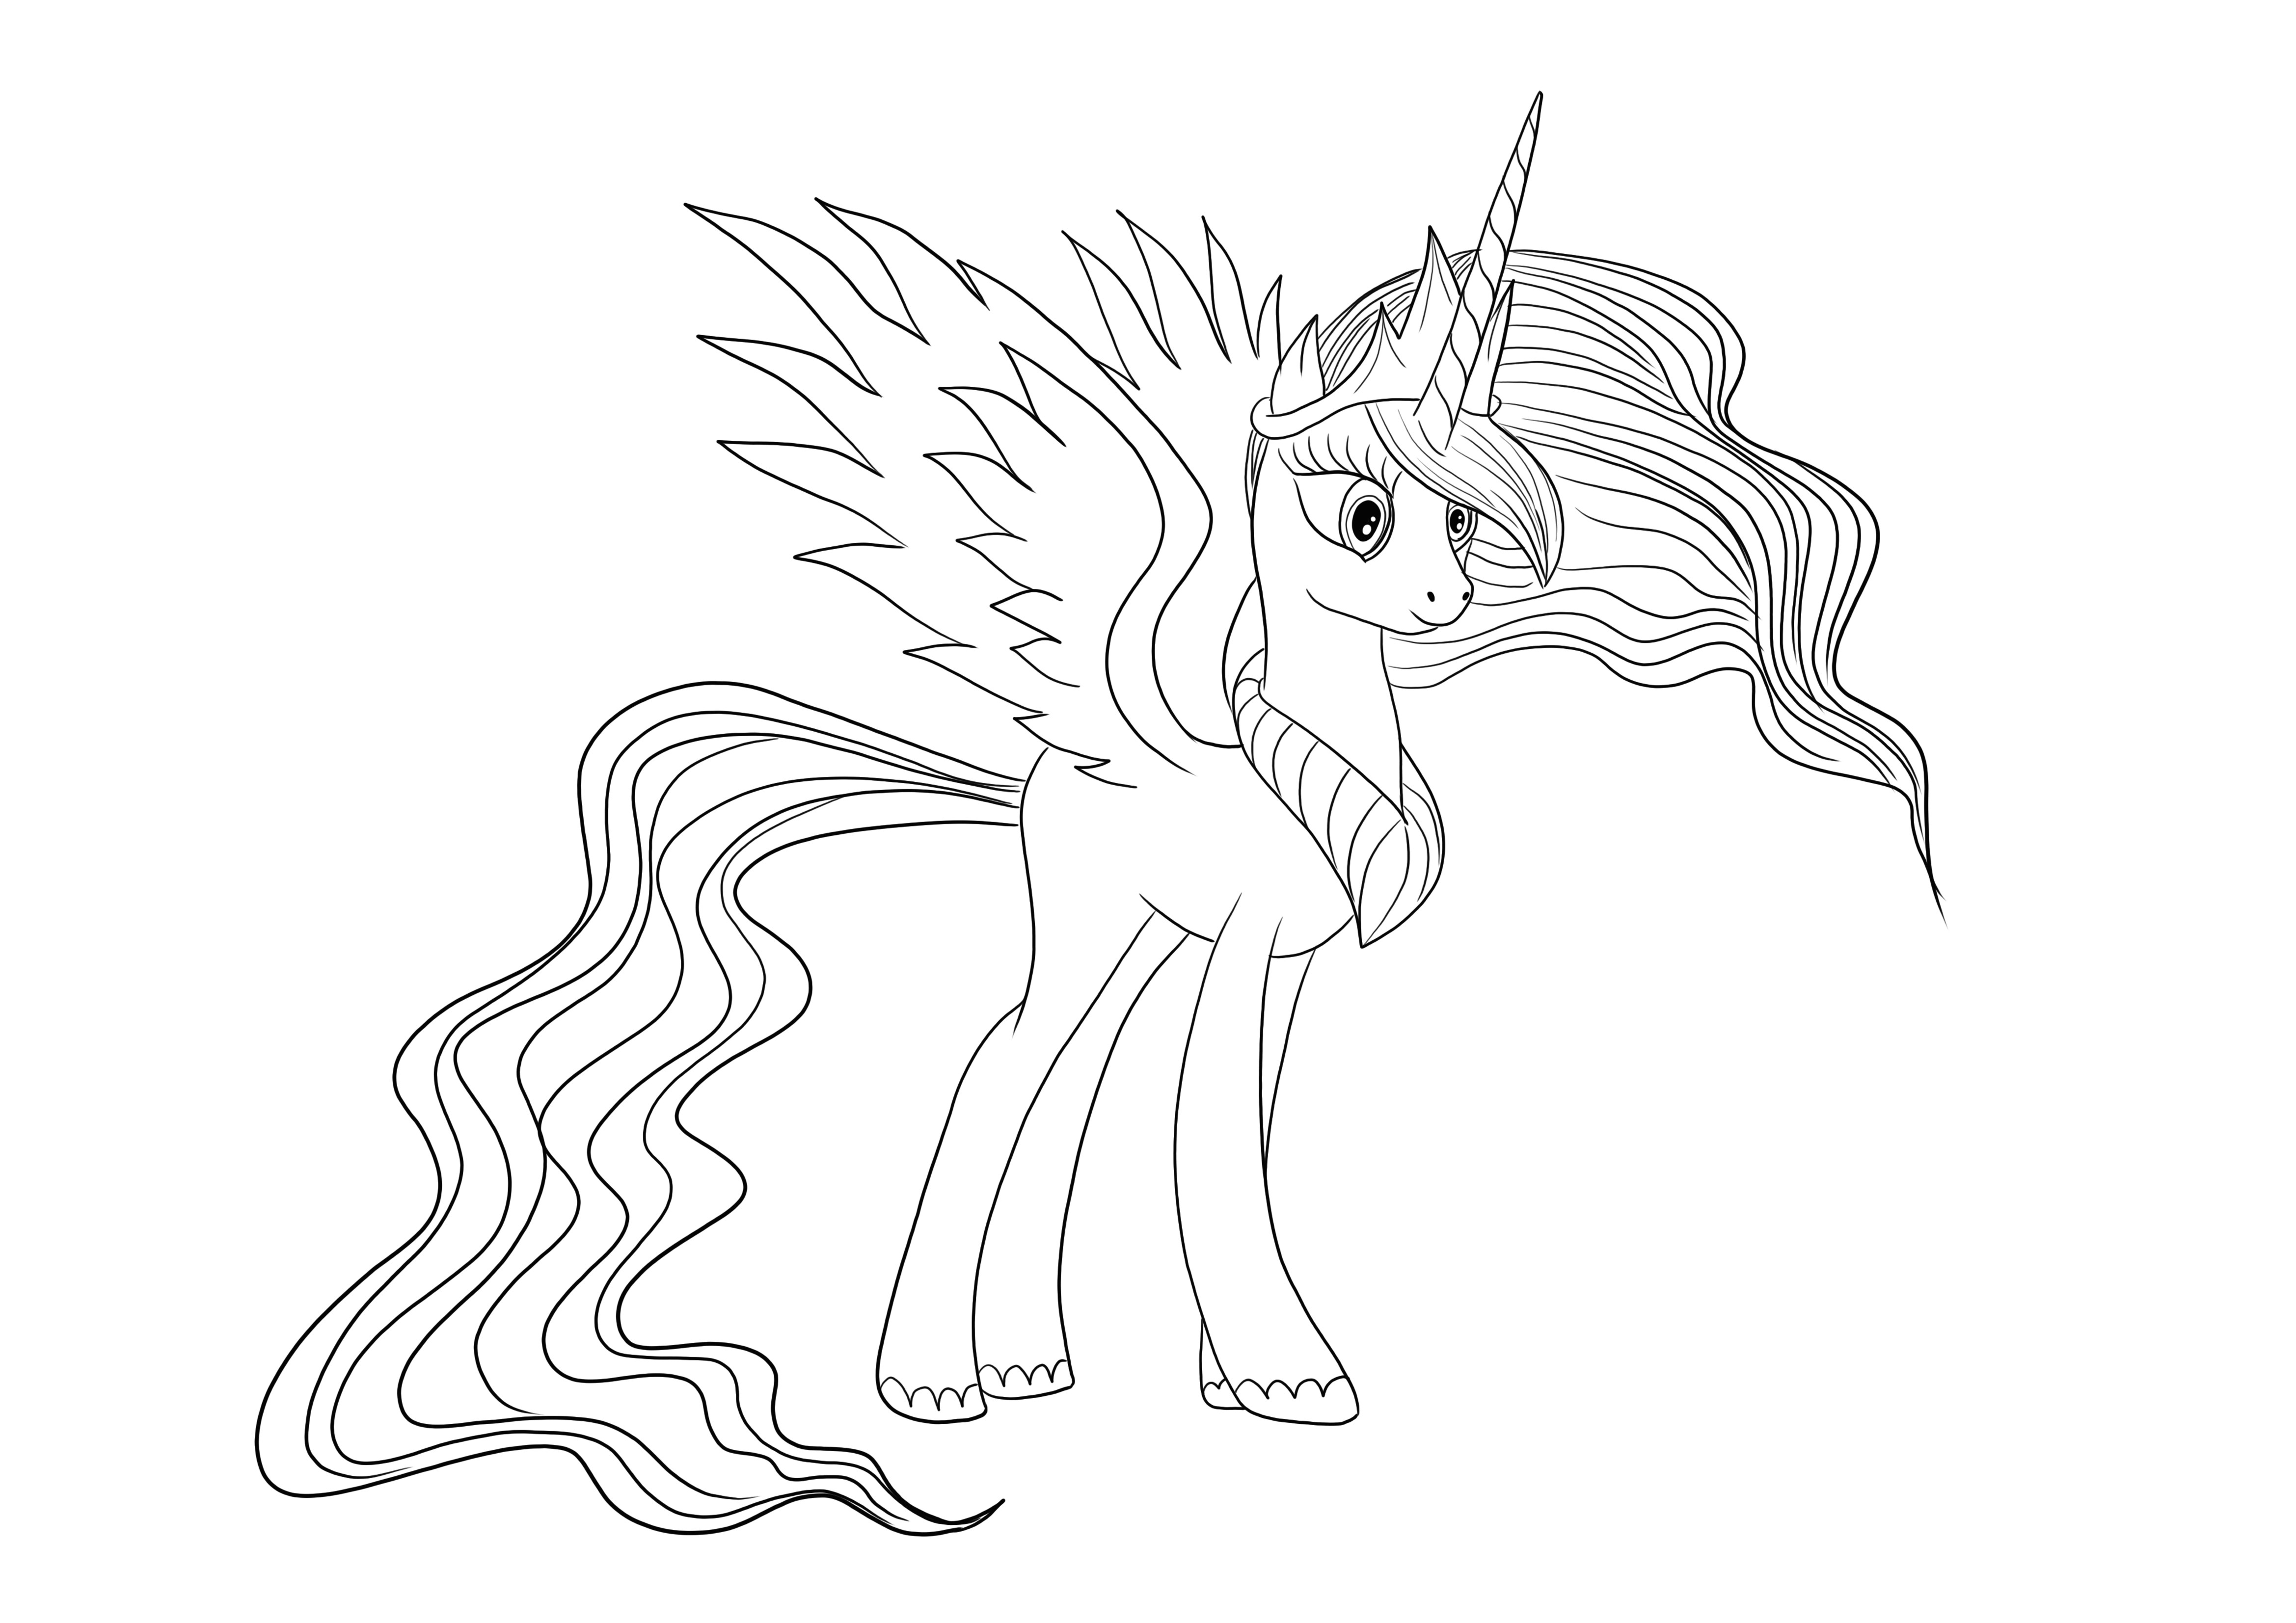 Gracious Princess Celestia van Little Pony gratis te downloaden en afbeelding in kleur kleurplaat